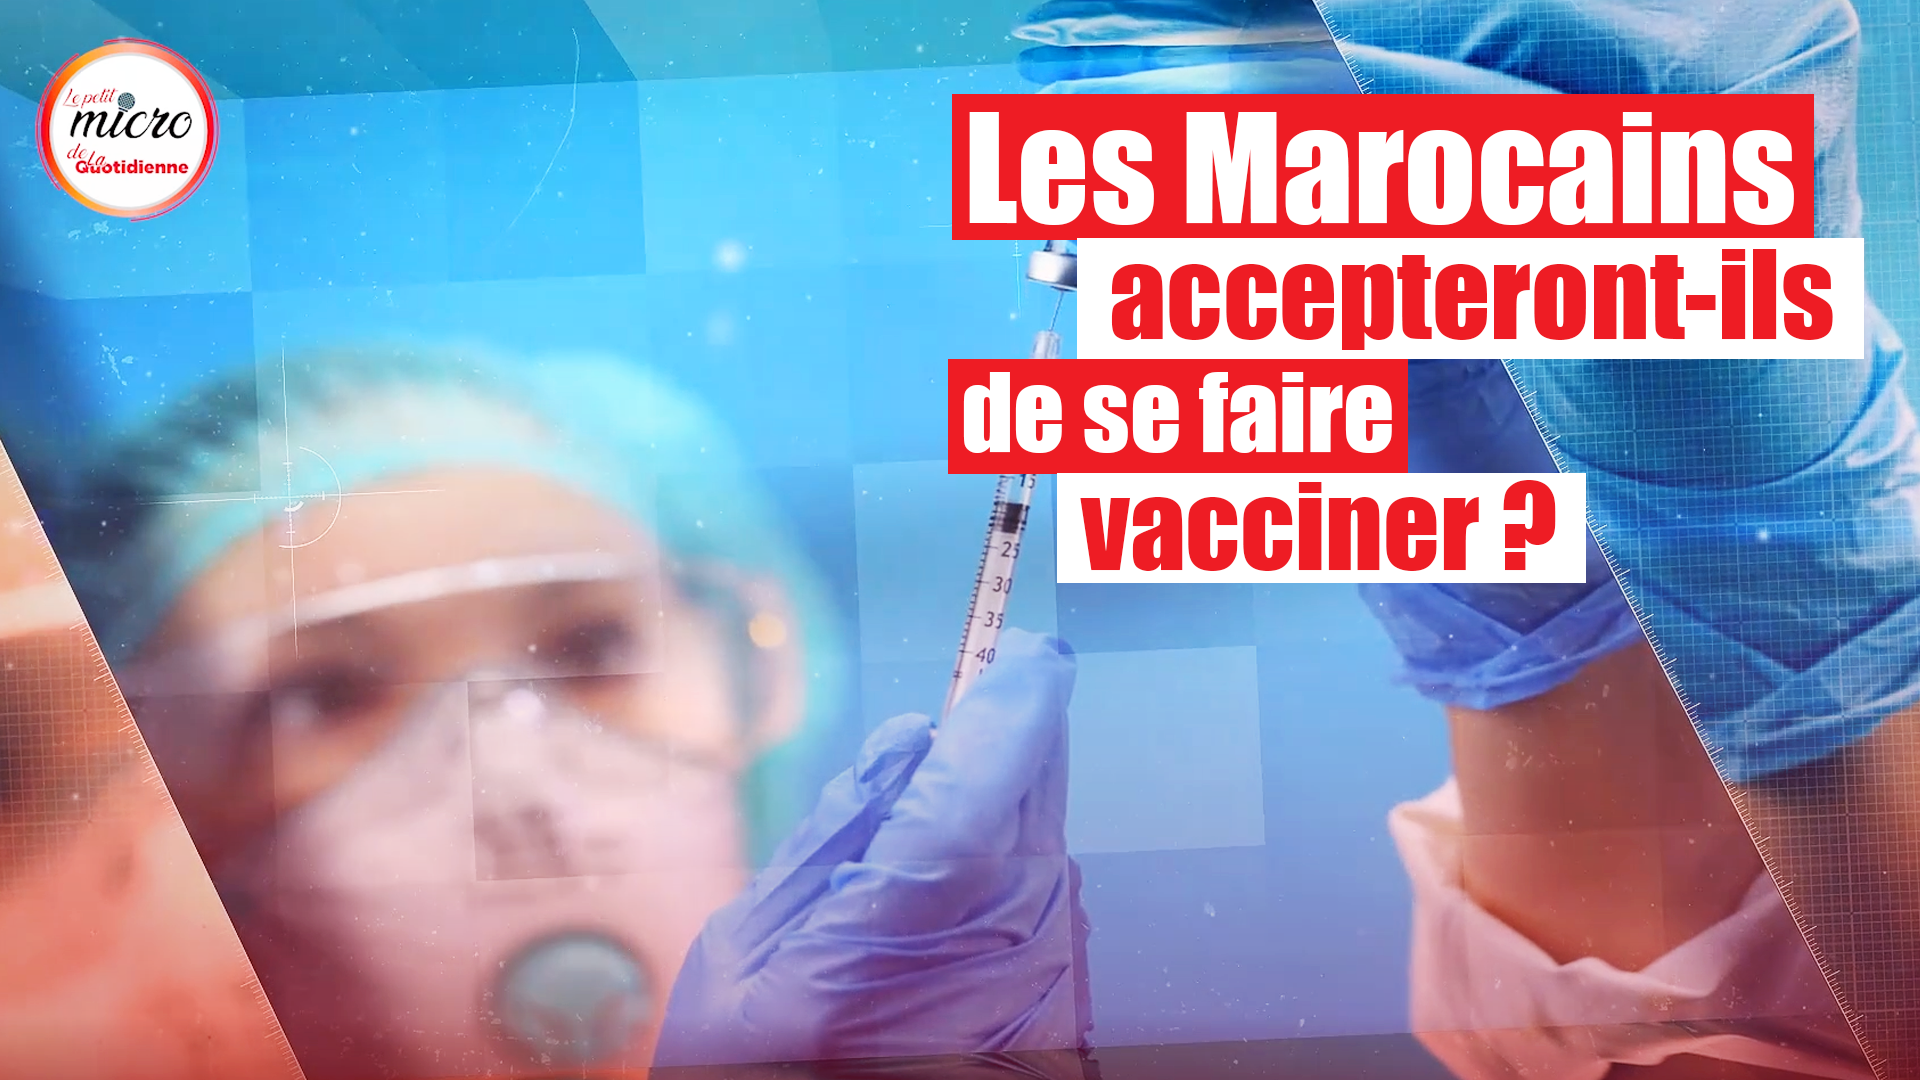 VIDEO. Covid-19: les Marocains accepteront-ils de se faire vacciner ?